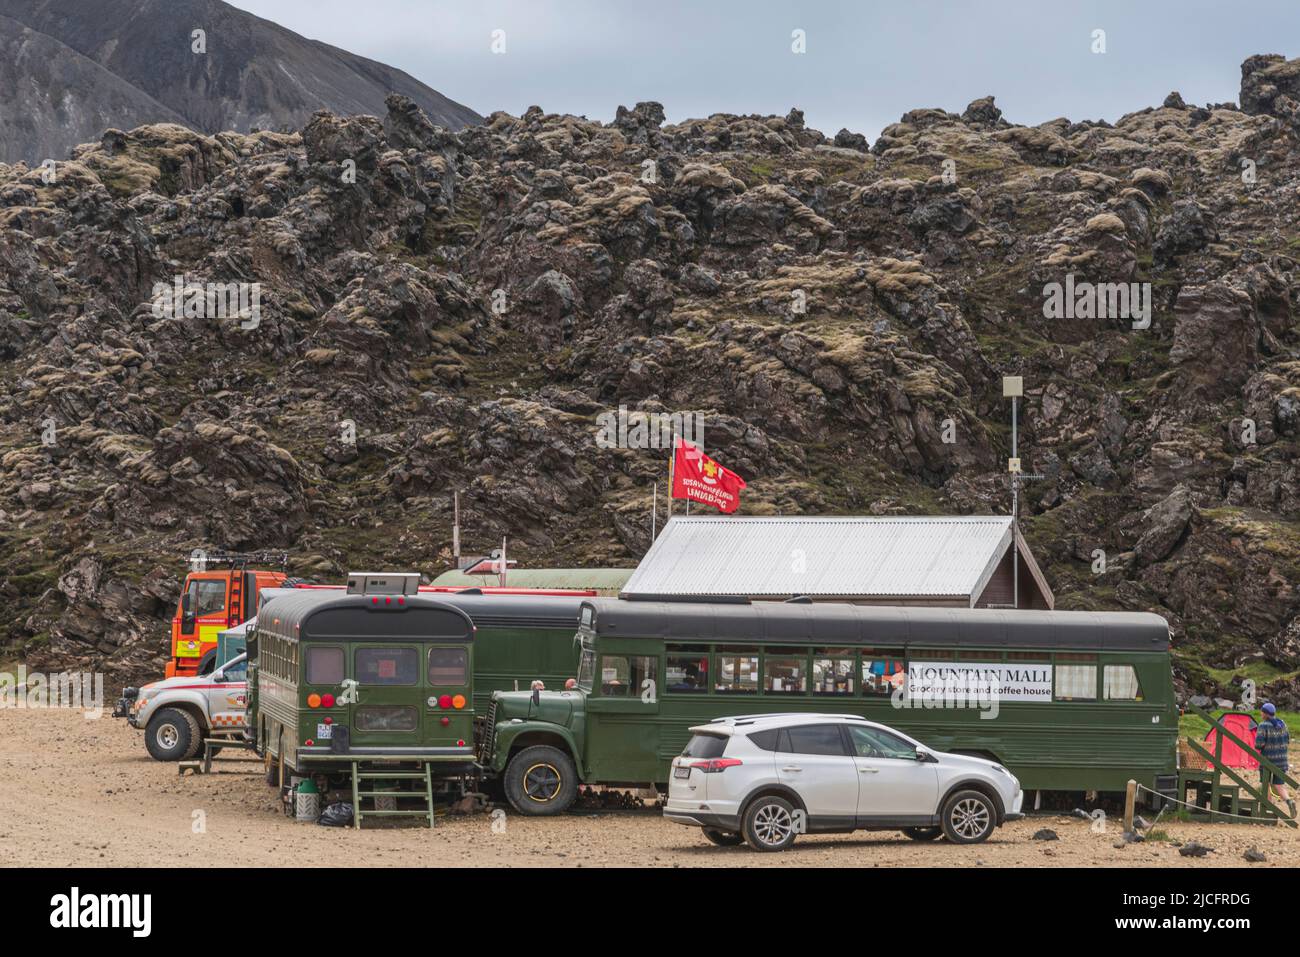 Der Laugavegur-Wanderweg ist die berühmteste mehrtägige Trekkingtour in Island. Landschaft aufgenommen aus dem Gebiet um Landmannalaugar, Ausgangspunkt des Fernwanderweges im isländischen Hochland. 'Mountain Mall' - kleiner Basismarkt im Bus. Stockfoto